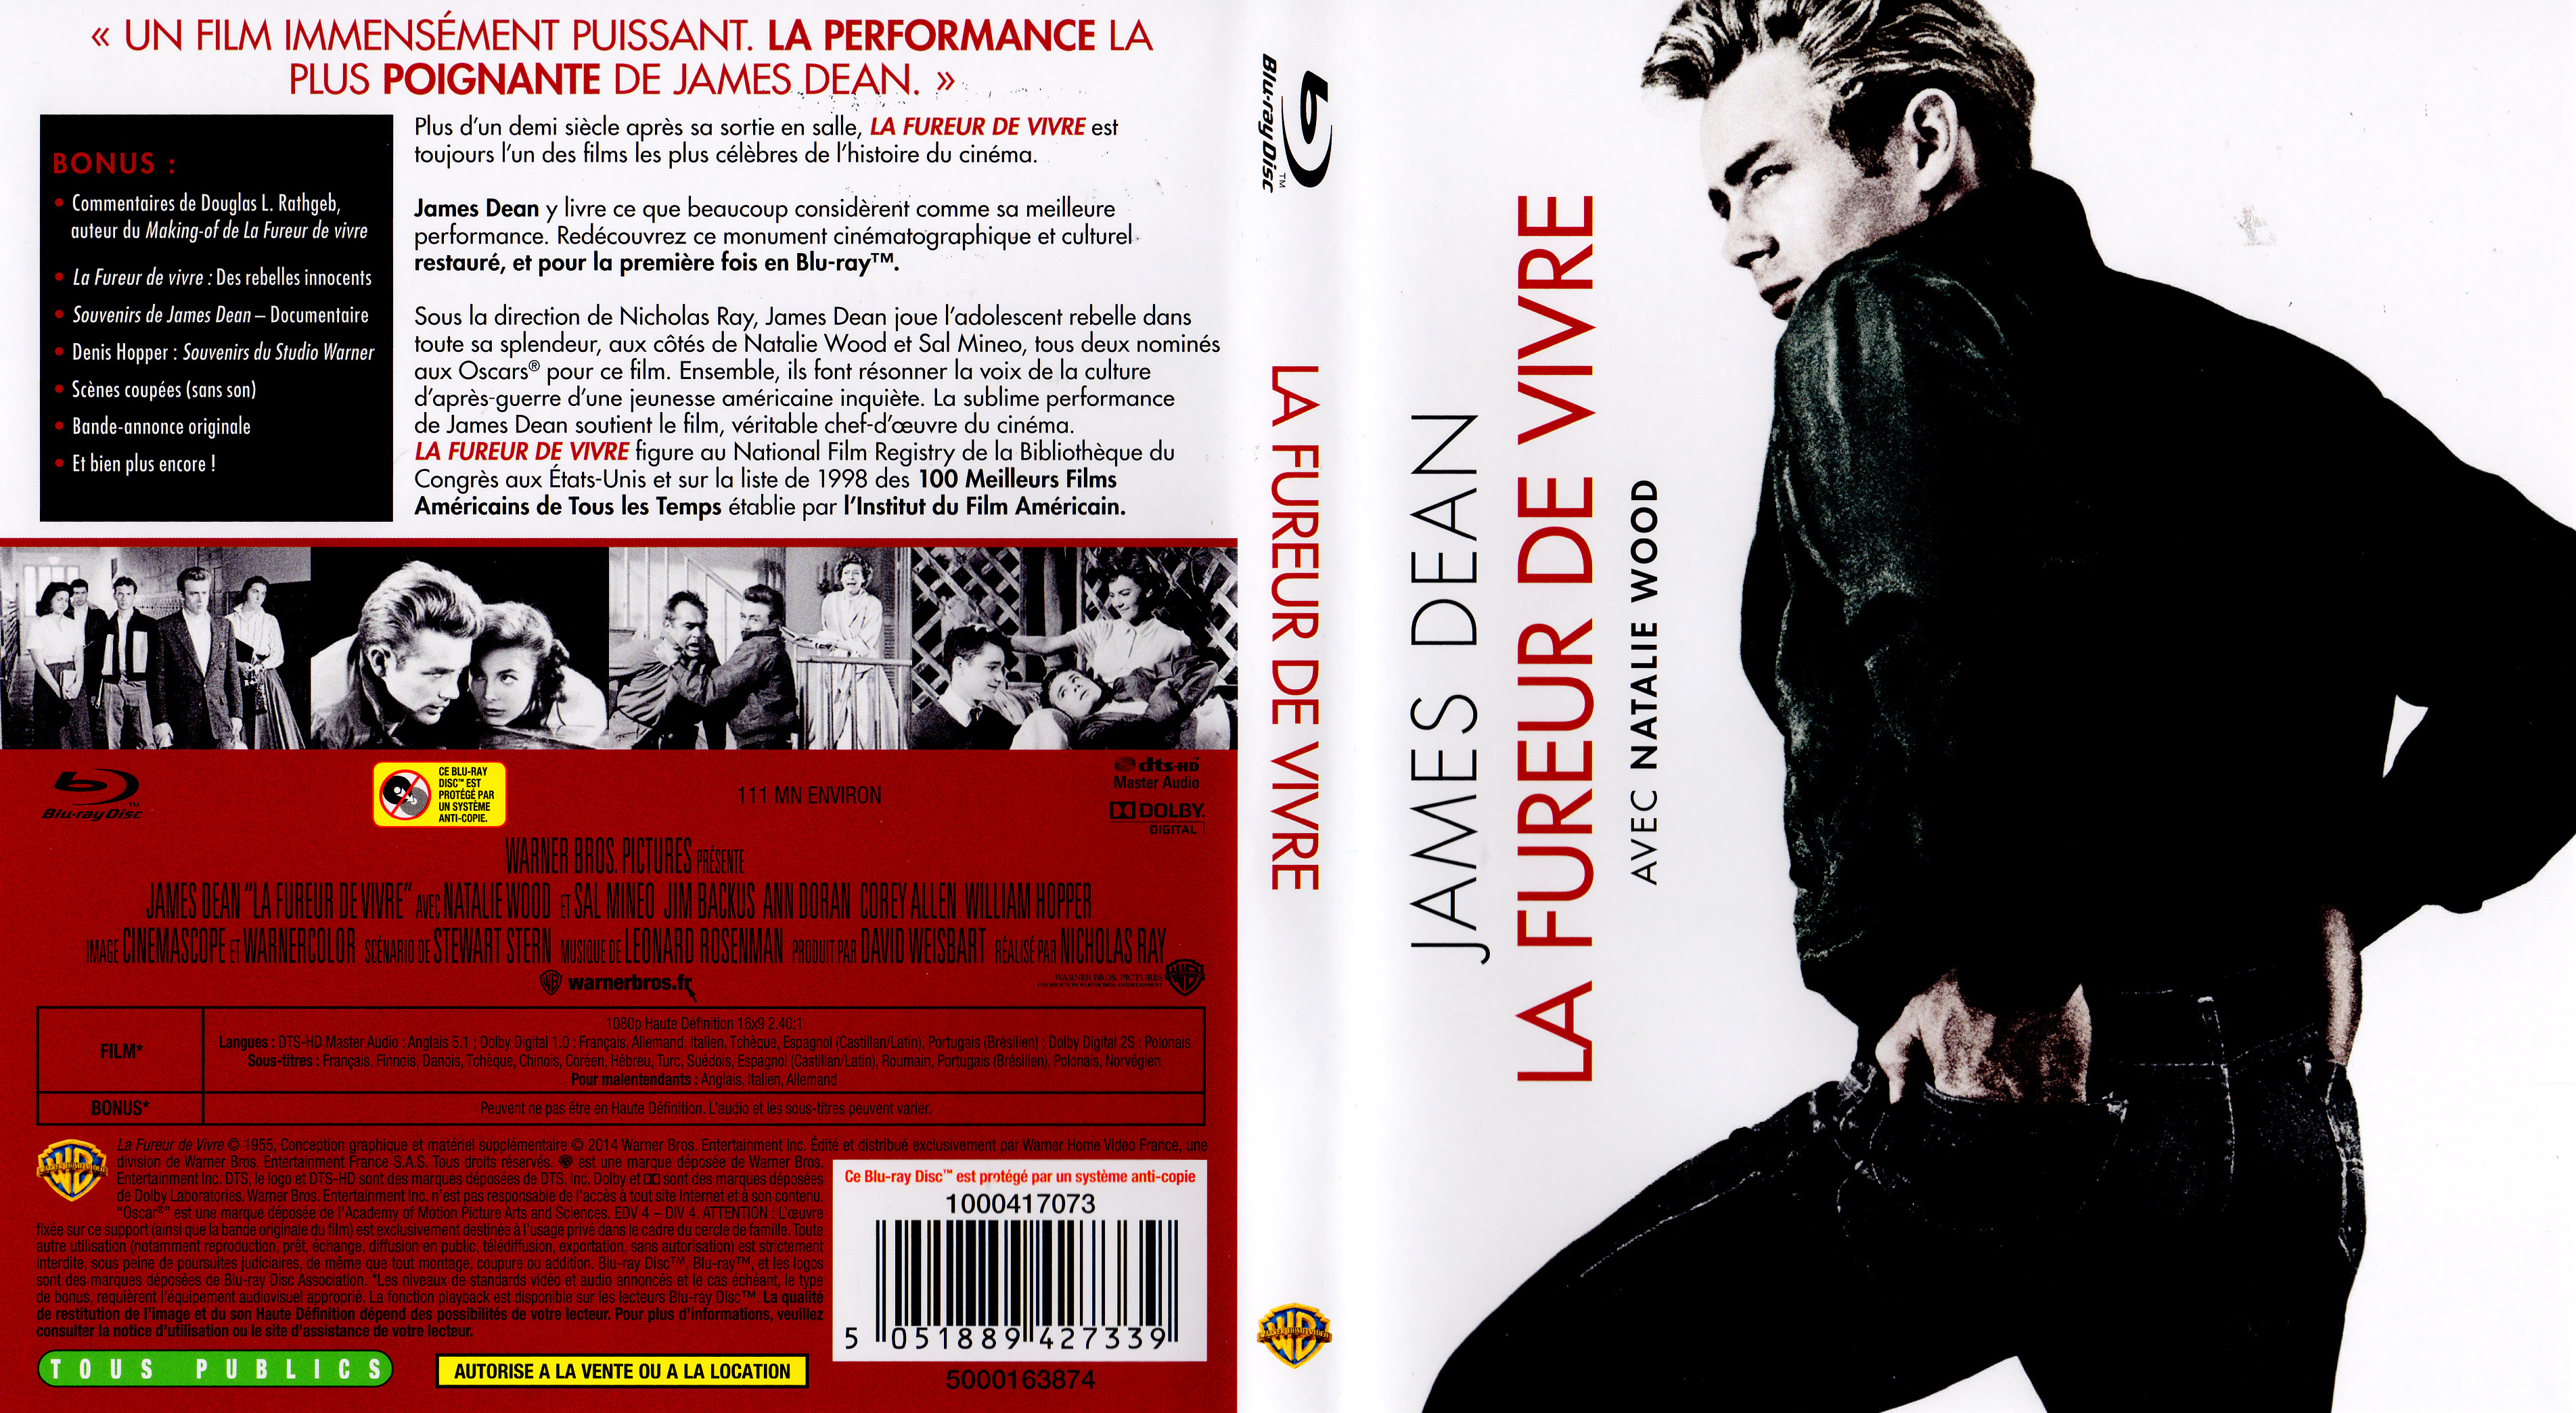 Jaquette DVD La fureur de vivre (BLU-RAY)